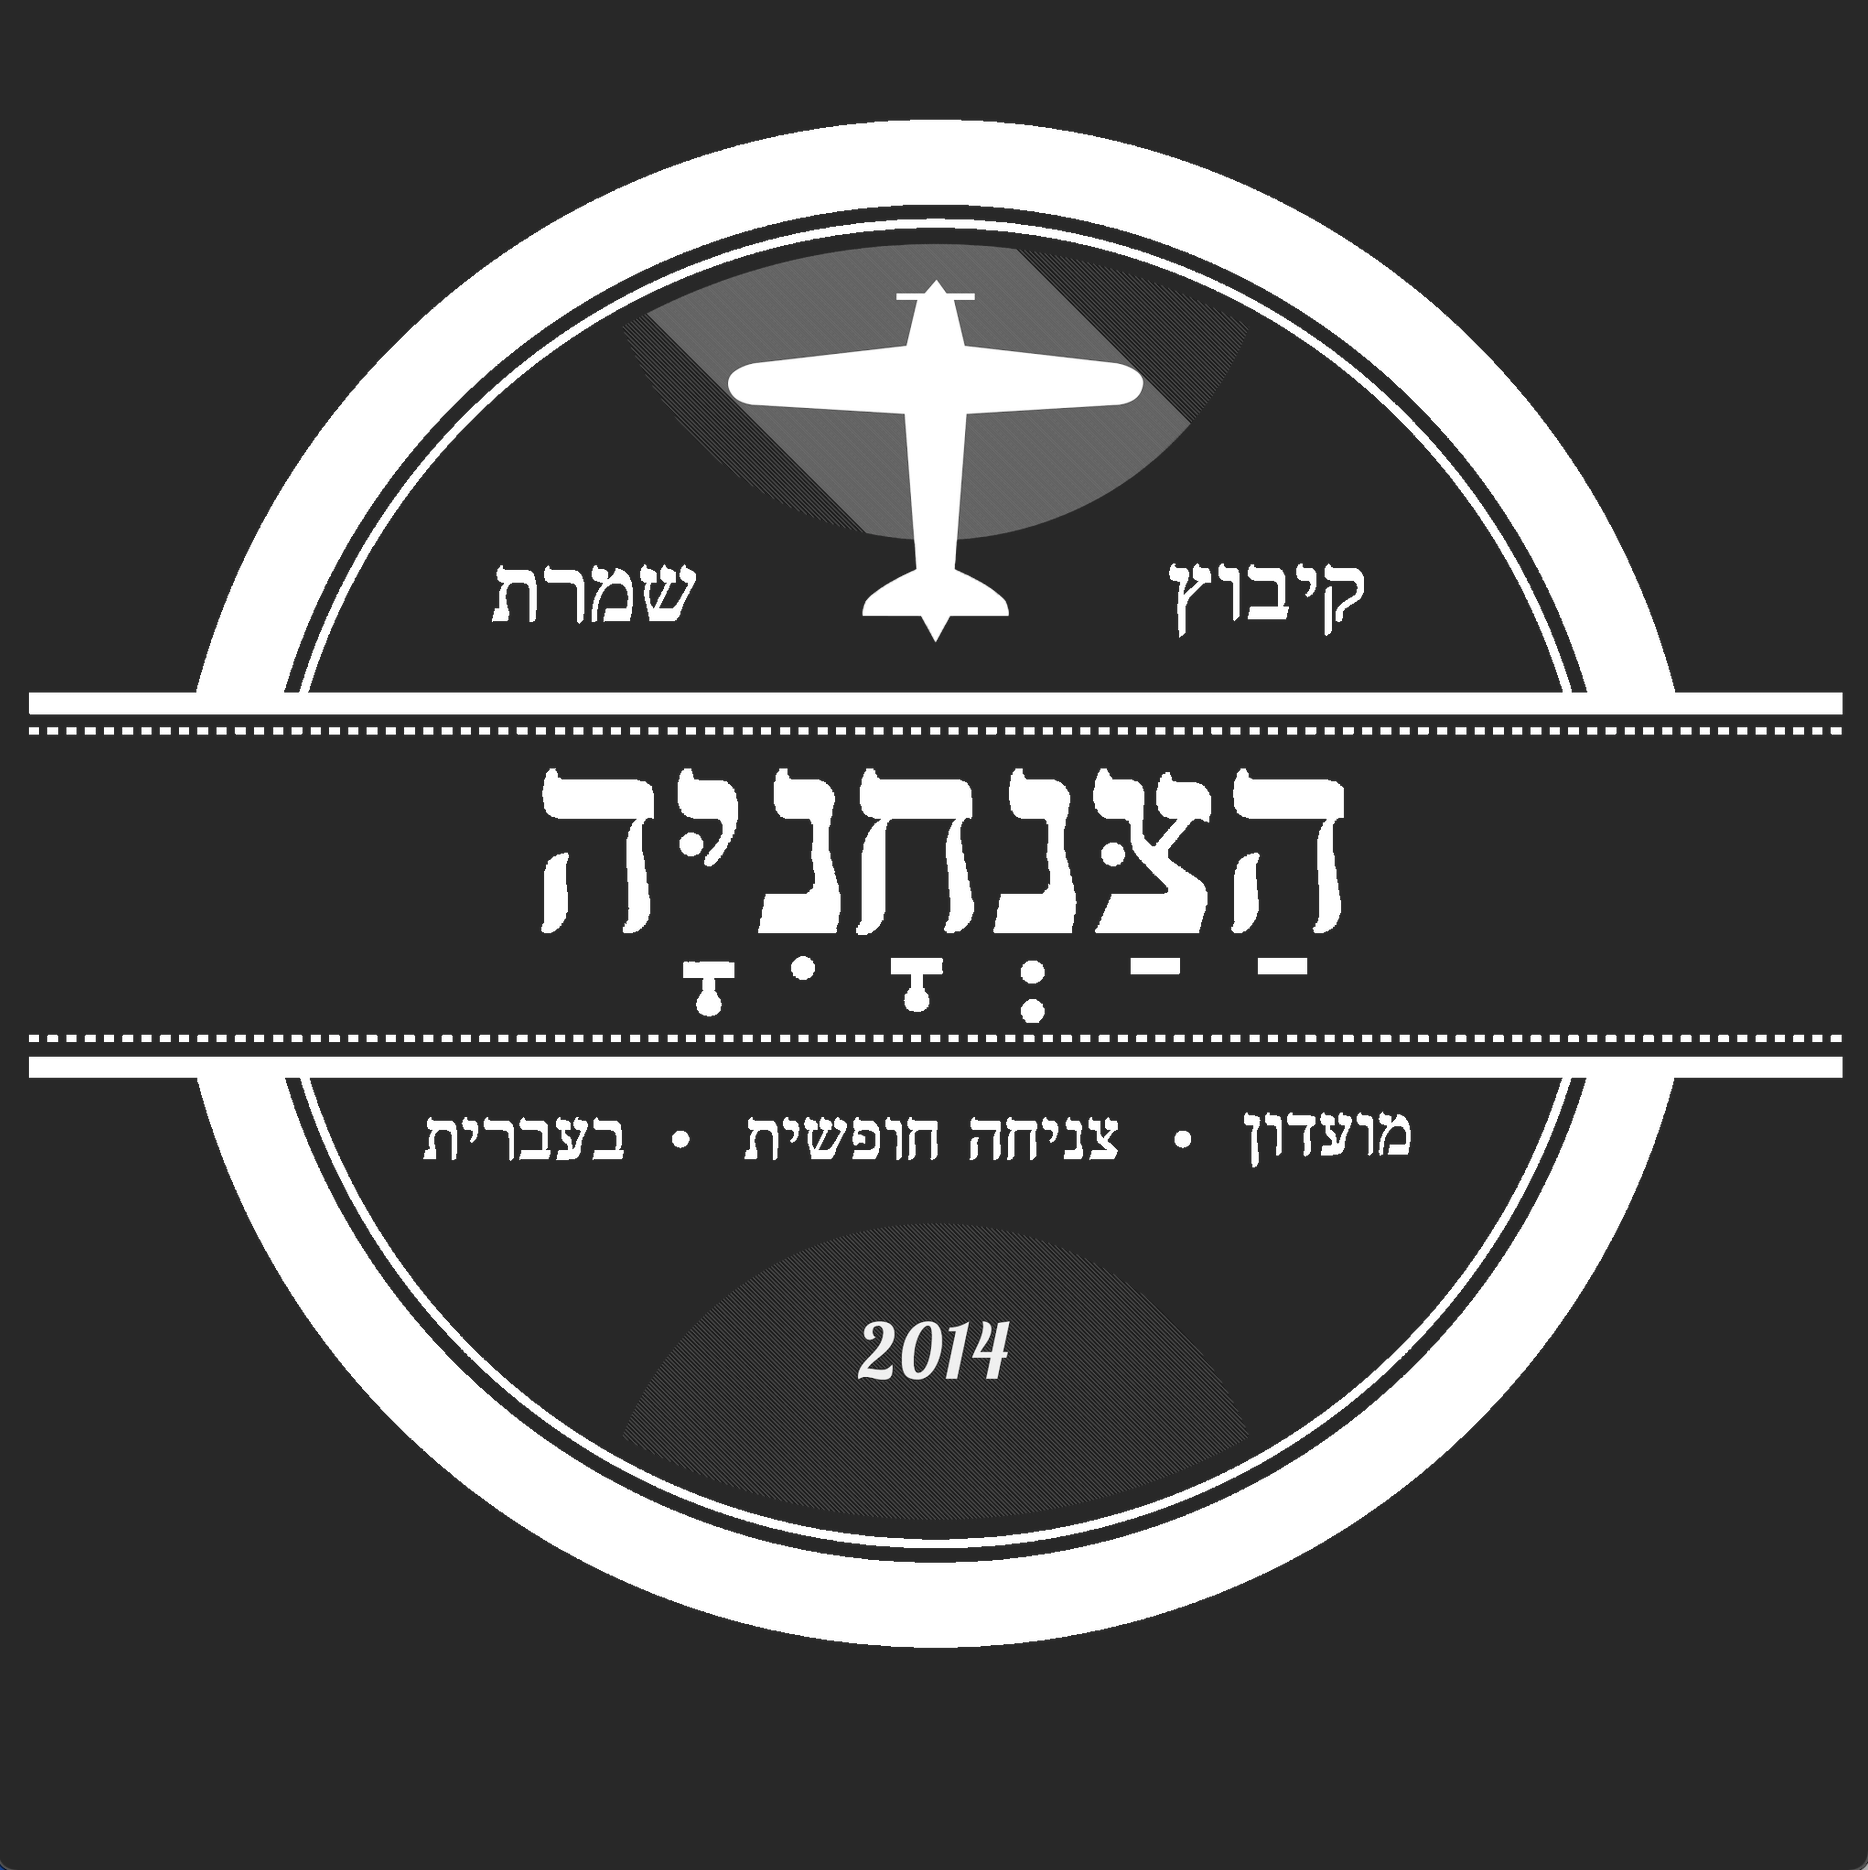 Skydive Shomrat logo